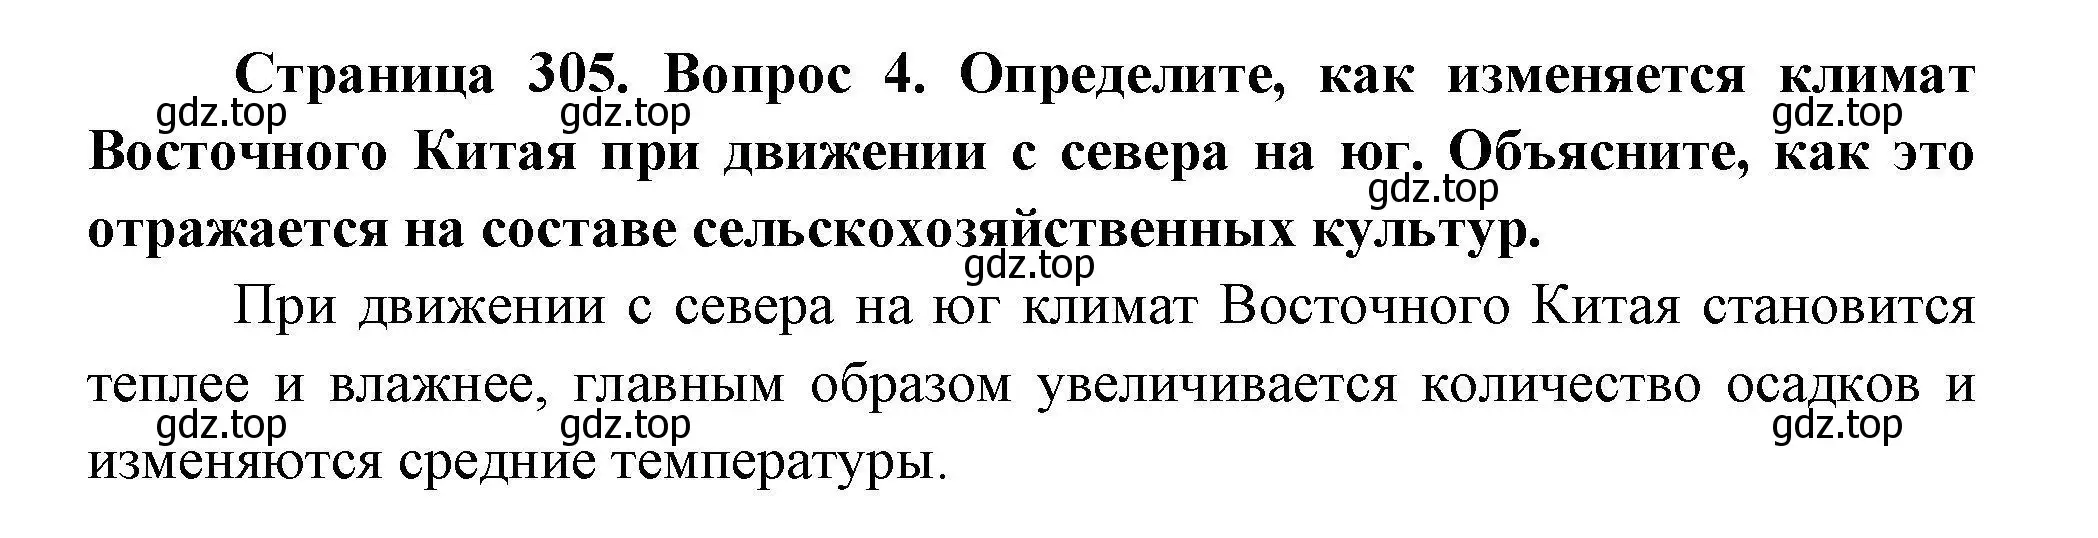 Решение номер 4 (страница 305) гдз по географии 7 класс Коринская, Душина, учебник